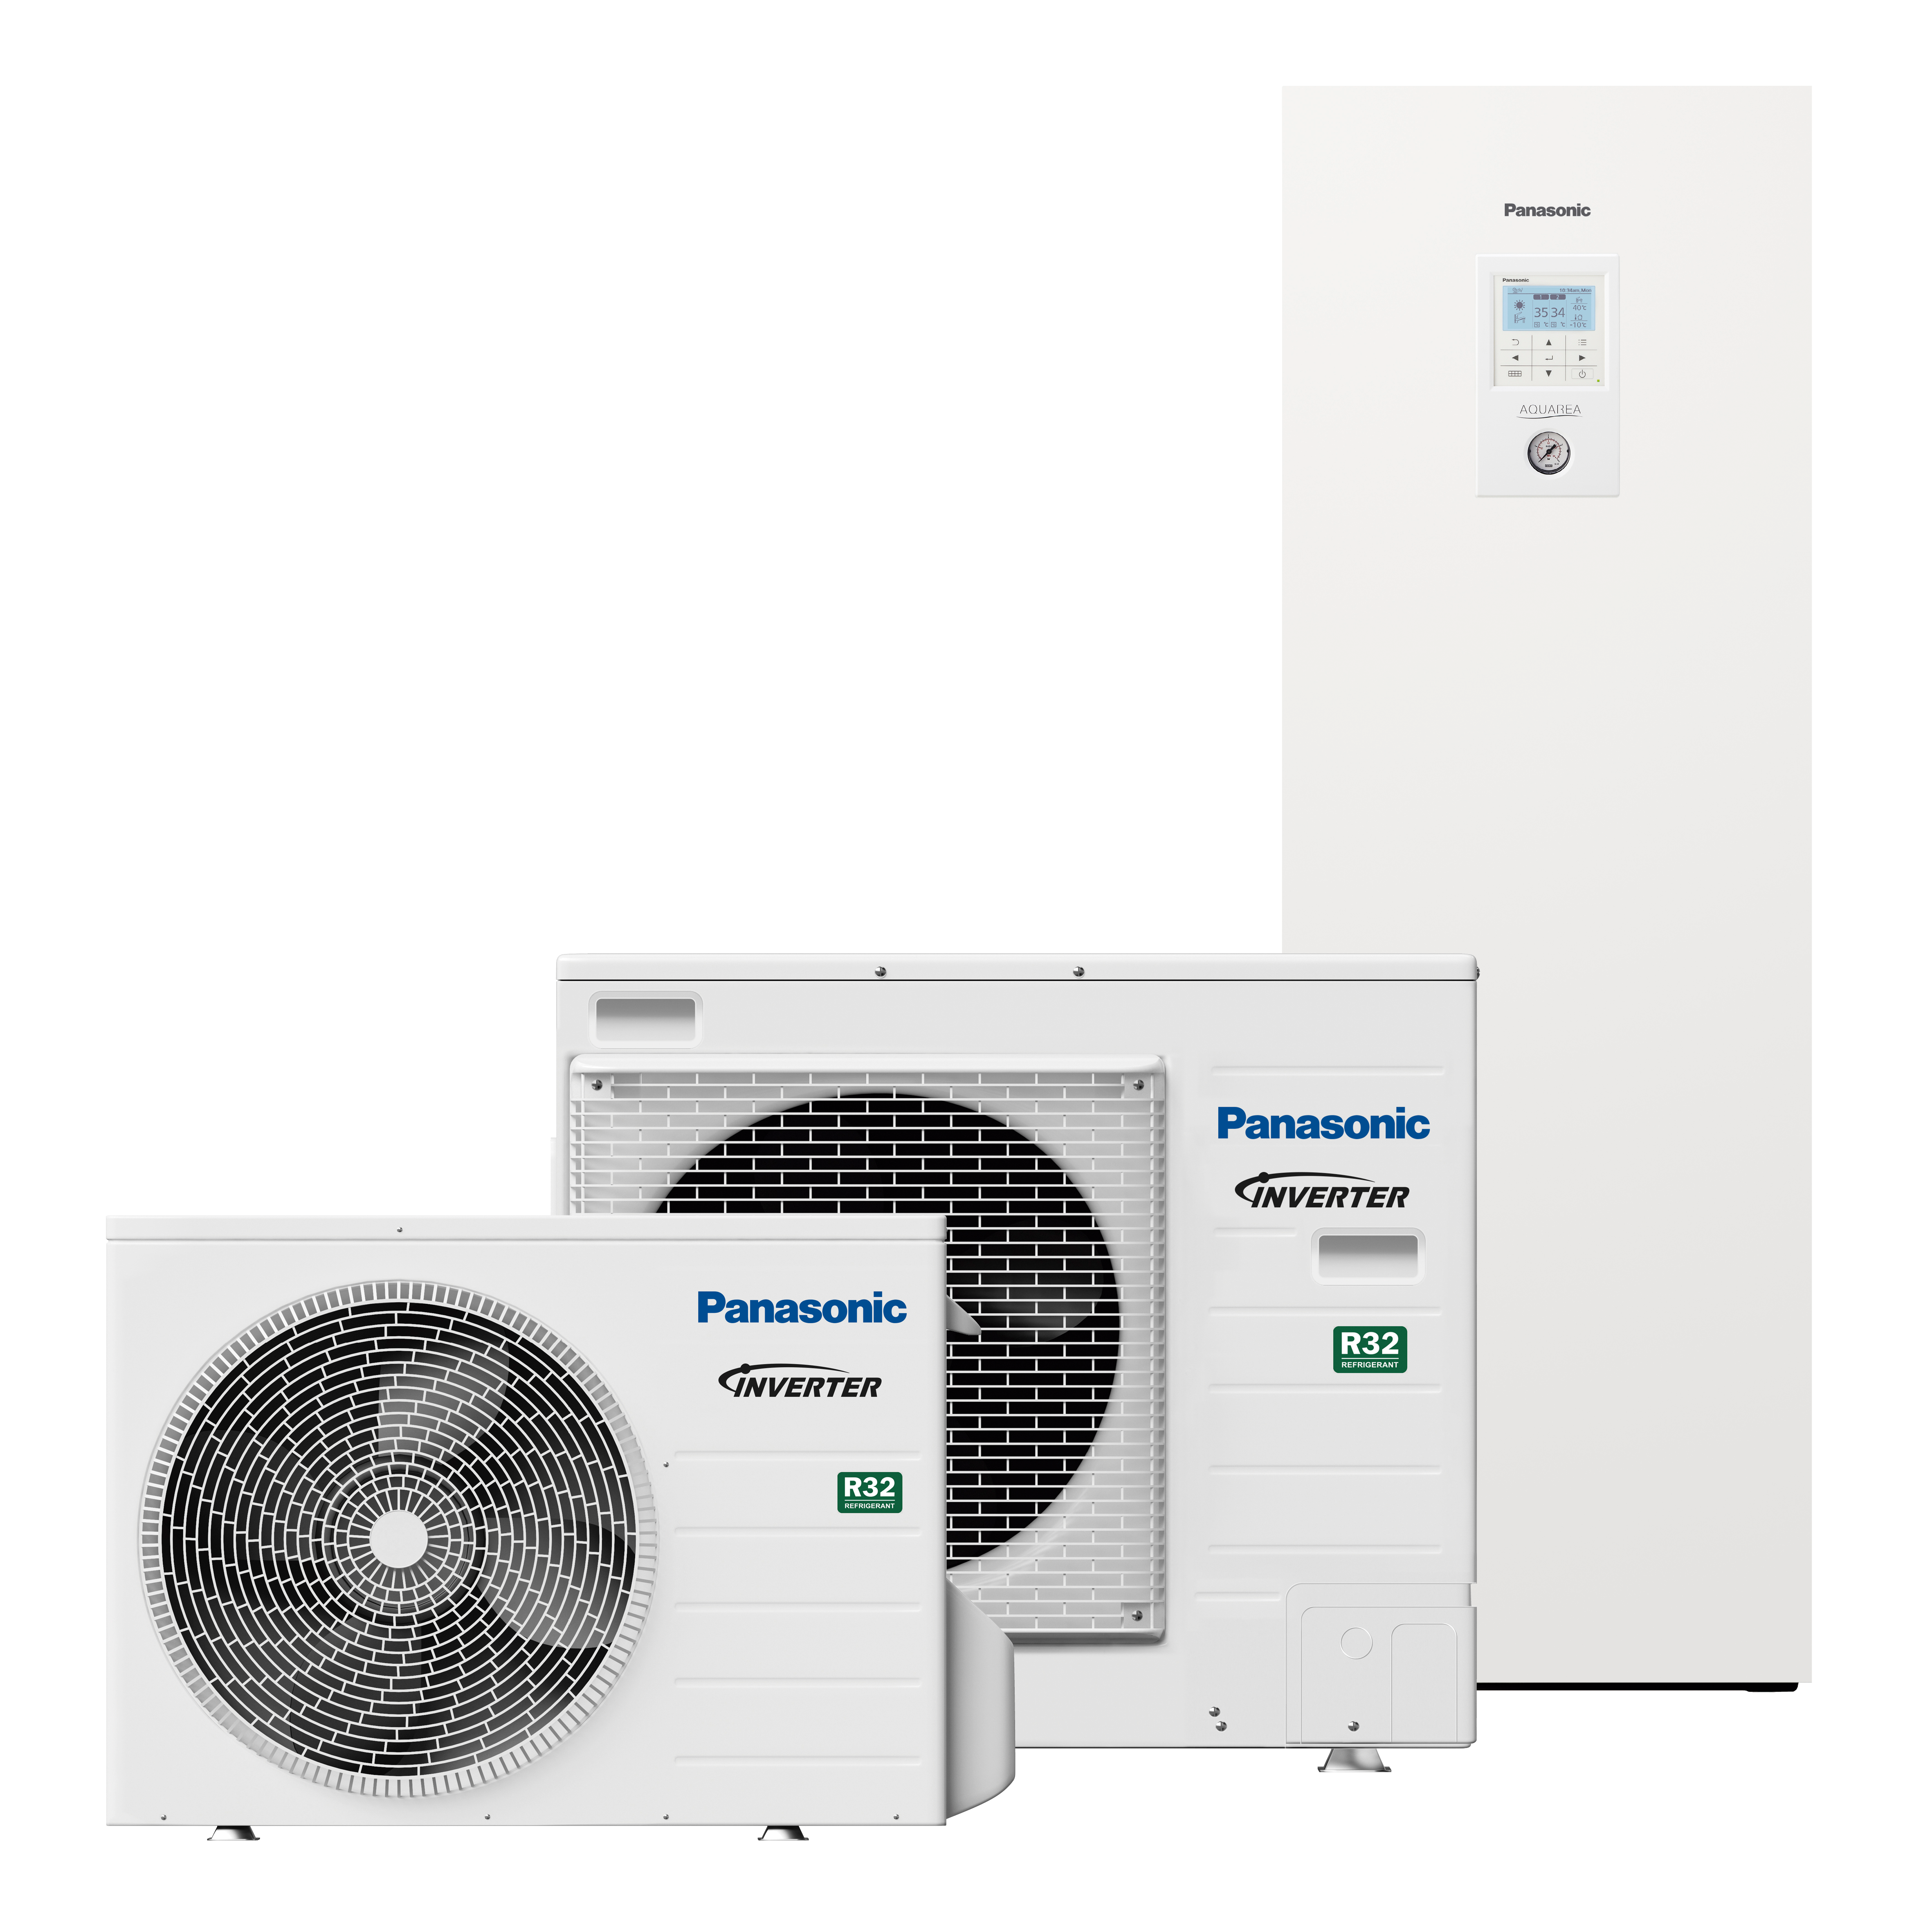 Leverer opvarmning, og varmt brugsvand opbevares i den 185-liters beholder - PanasonicLV_All-in-one_produktbillede - kinnan.dk